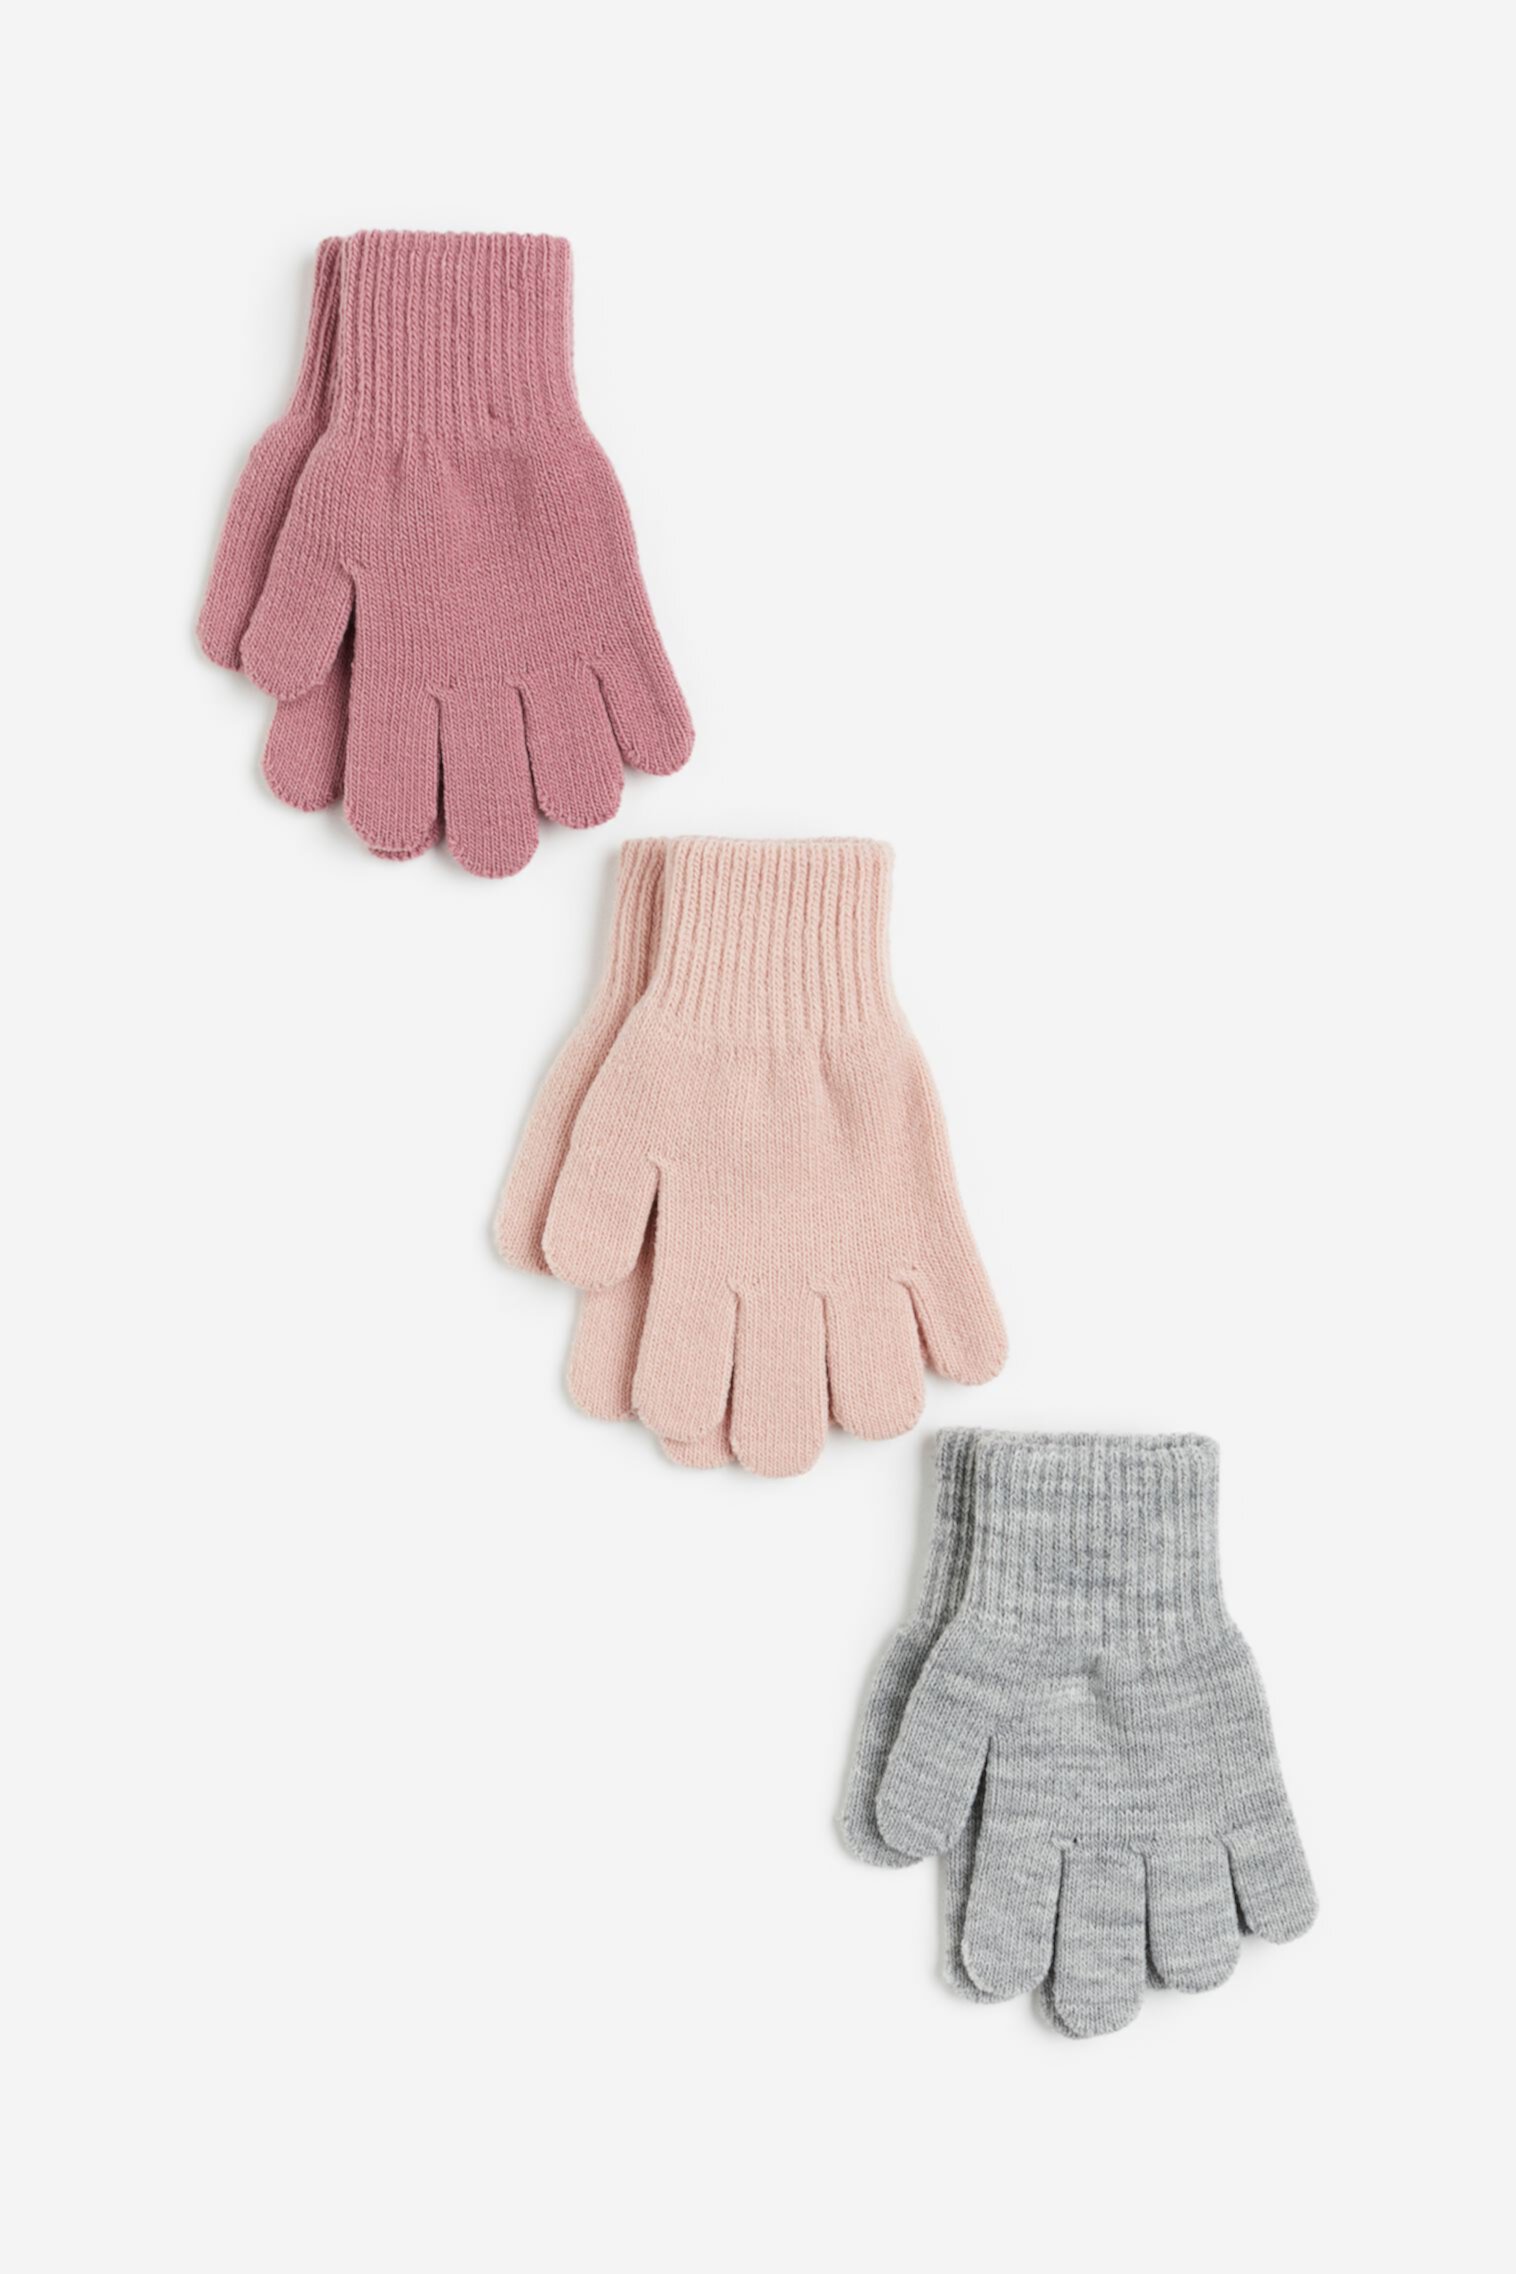 3 комплекта перчаток H&M